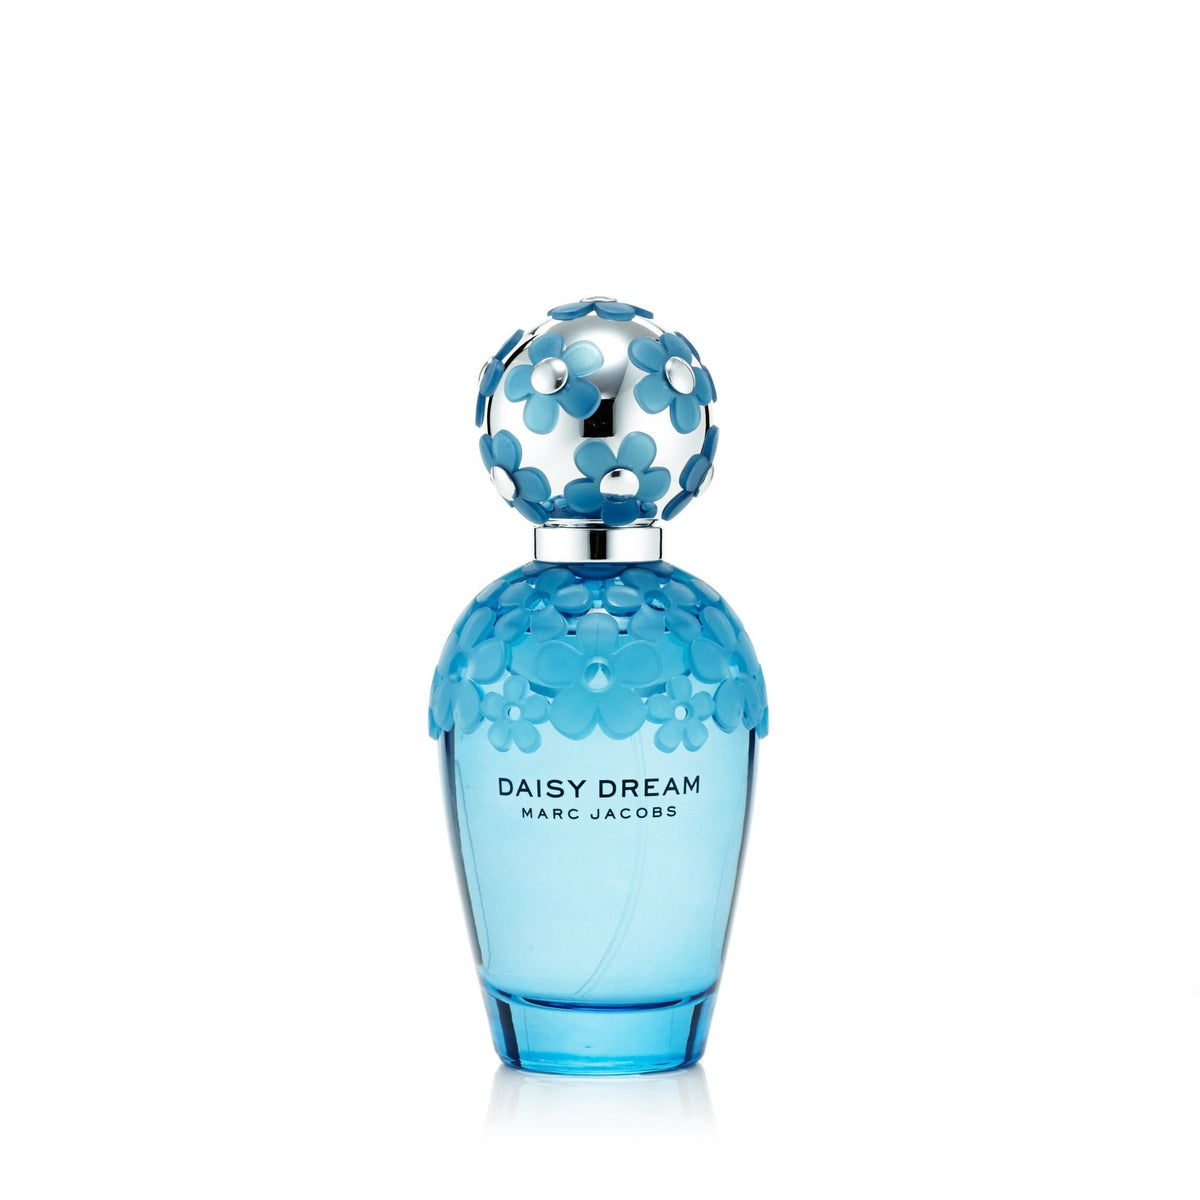 Daisy Dream Forever Eau de Parfum Spray for Women by Marc Jacobs 3.4 oz.